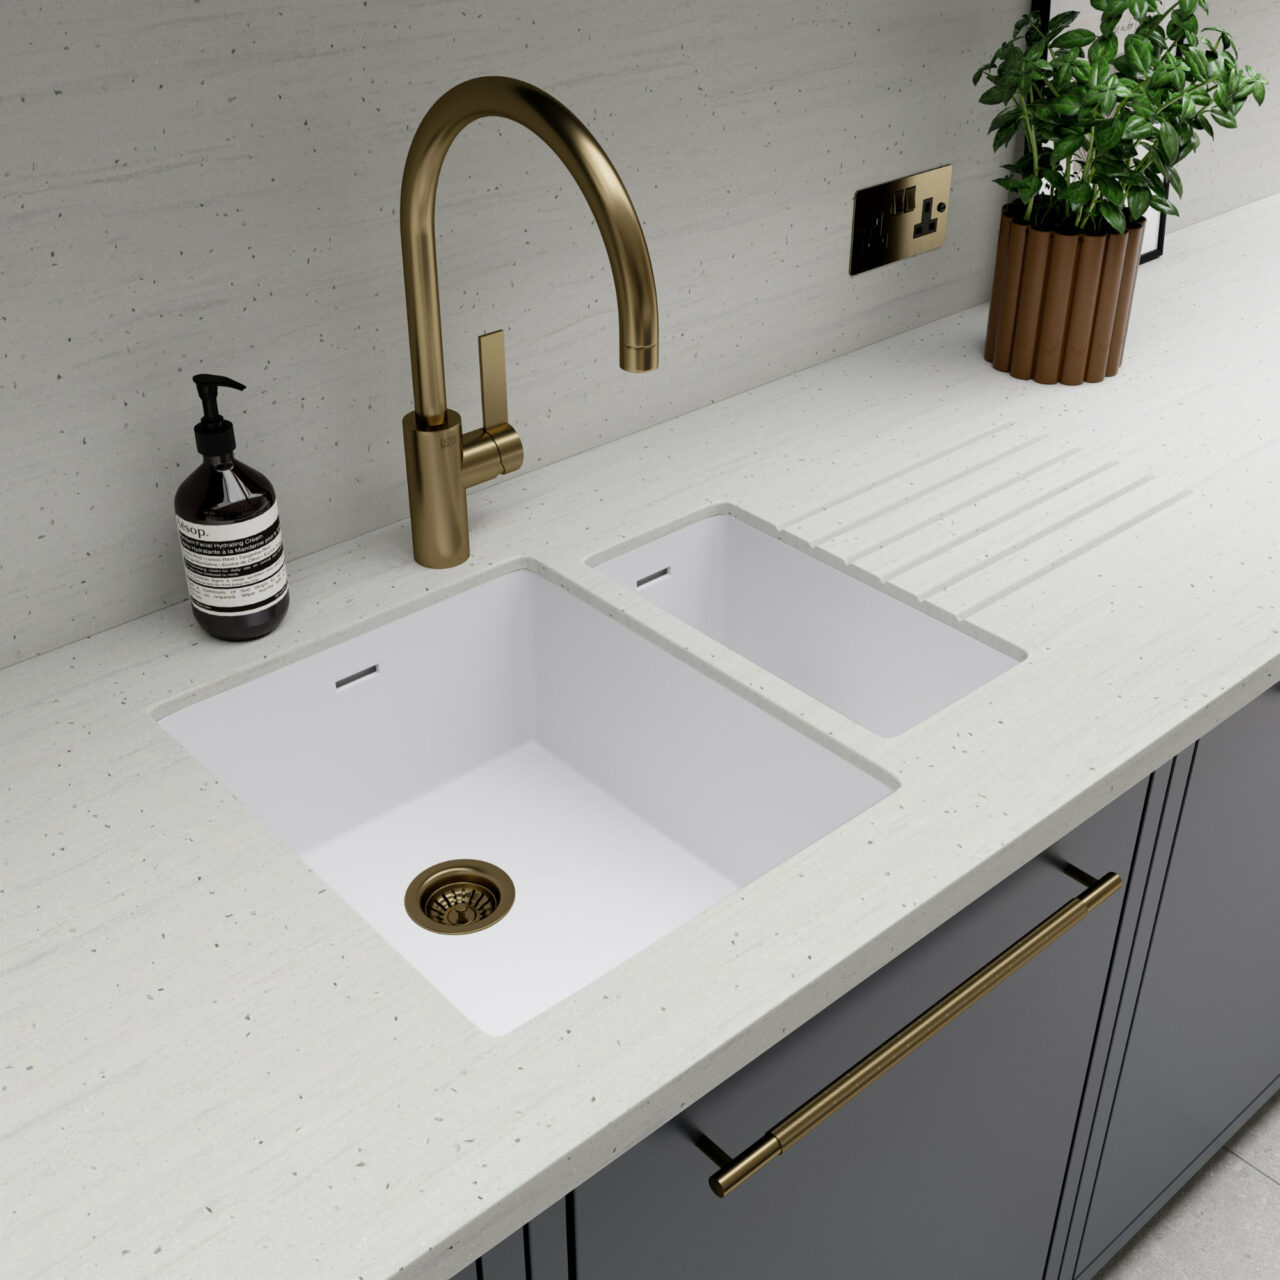 White Durasein kitchen worktop with a white integrated Durasein sink